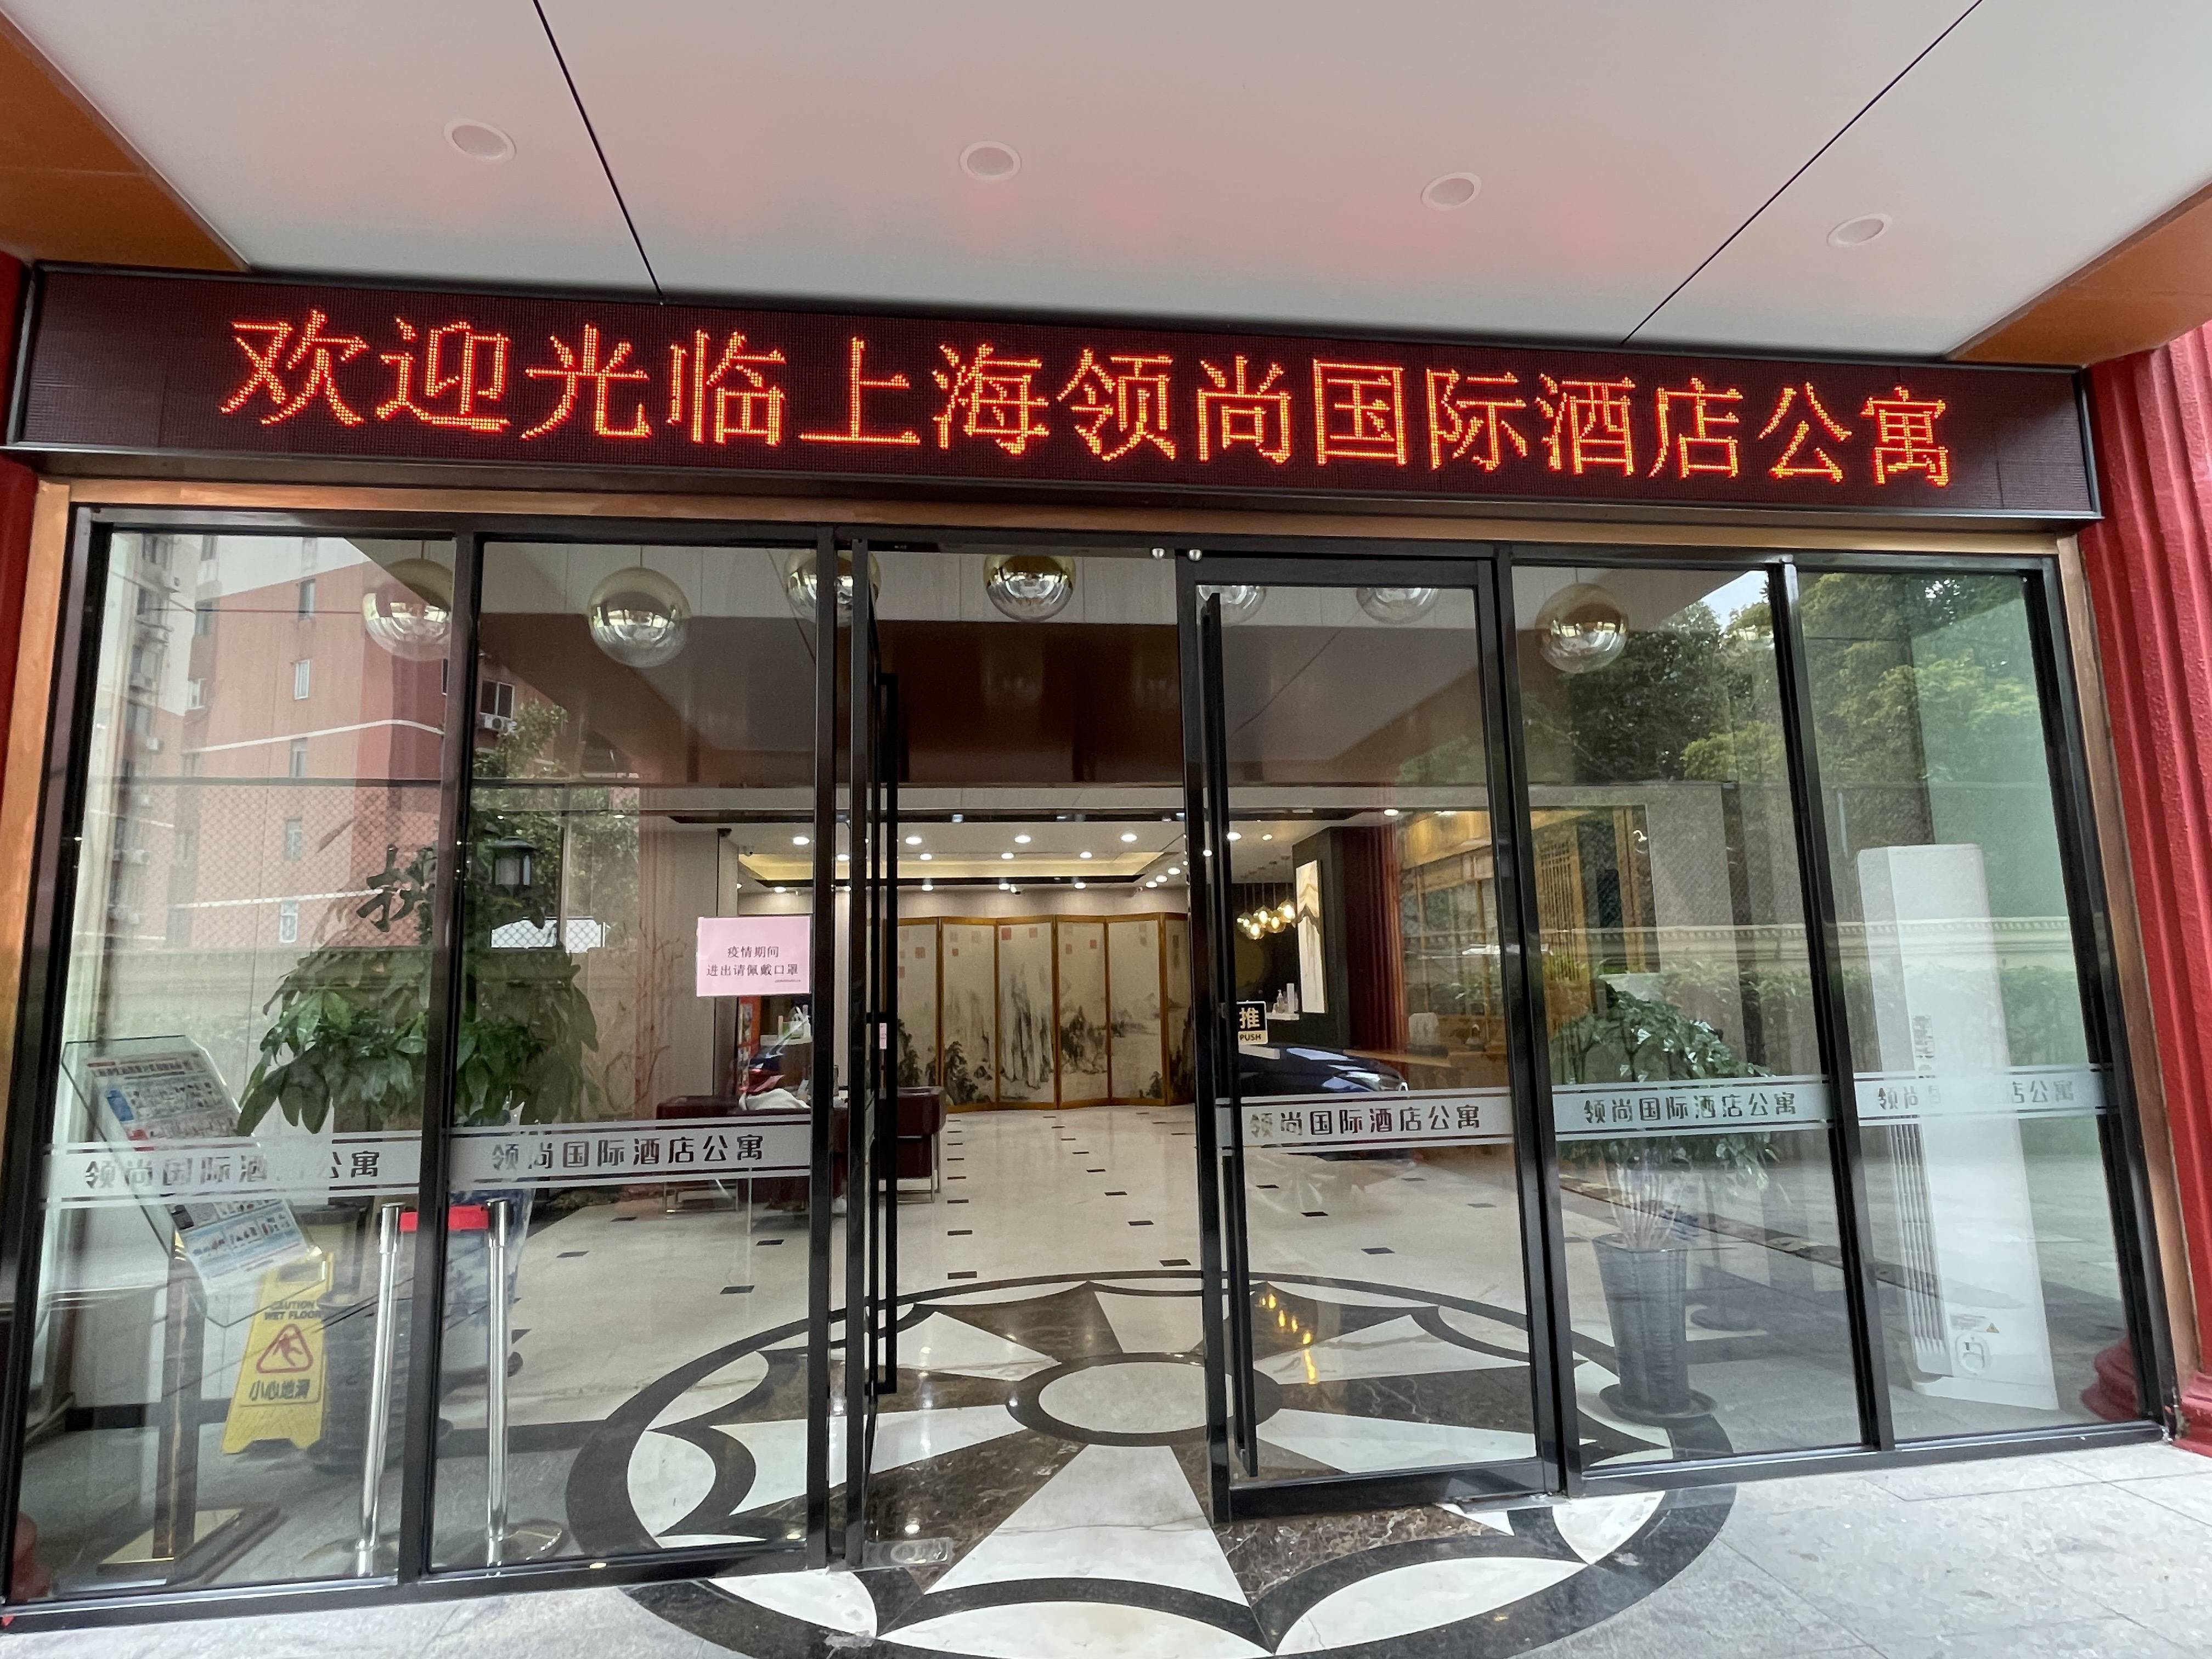 上海领尚国际酒店公寓官方网站领尚国际酒店欢迎您官方唯一指定网站